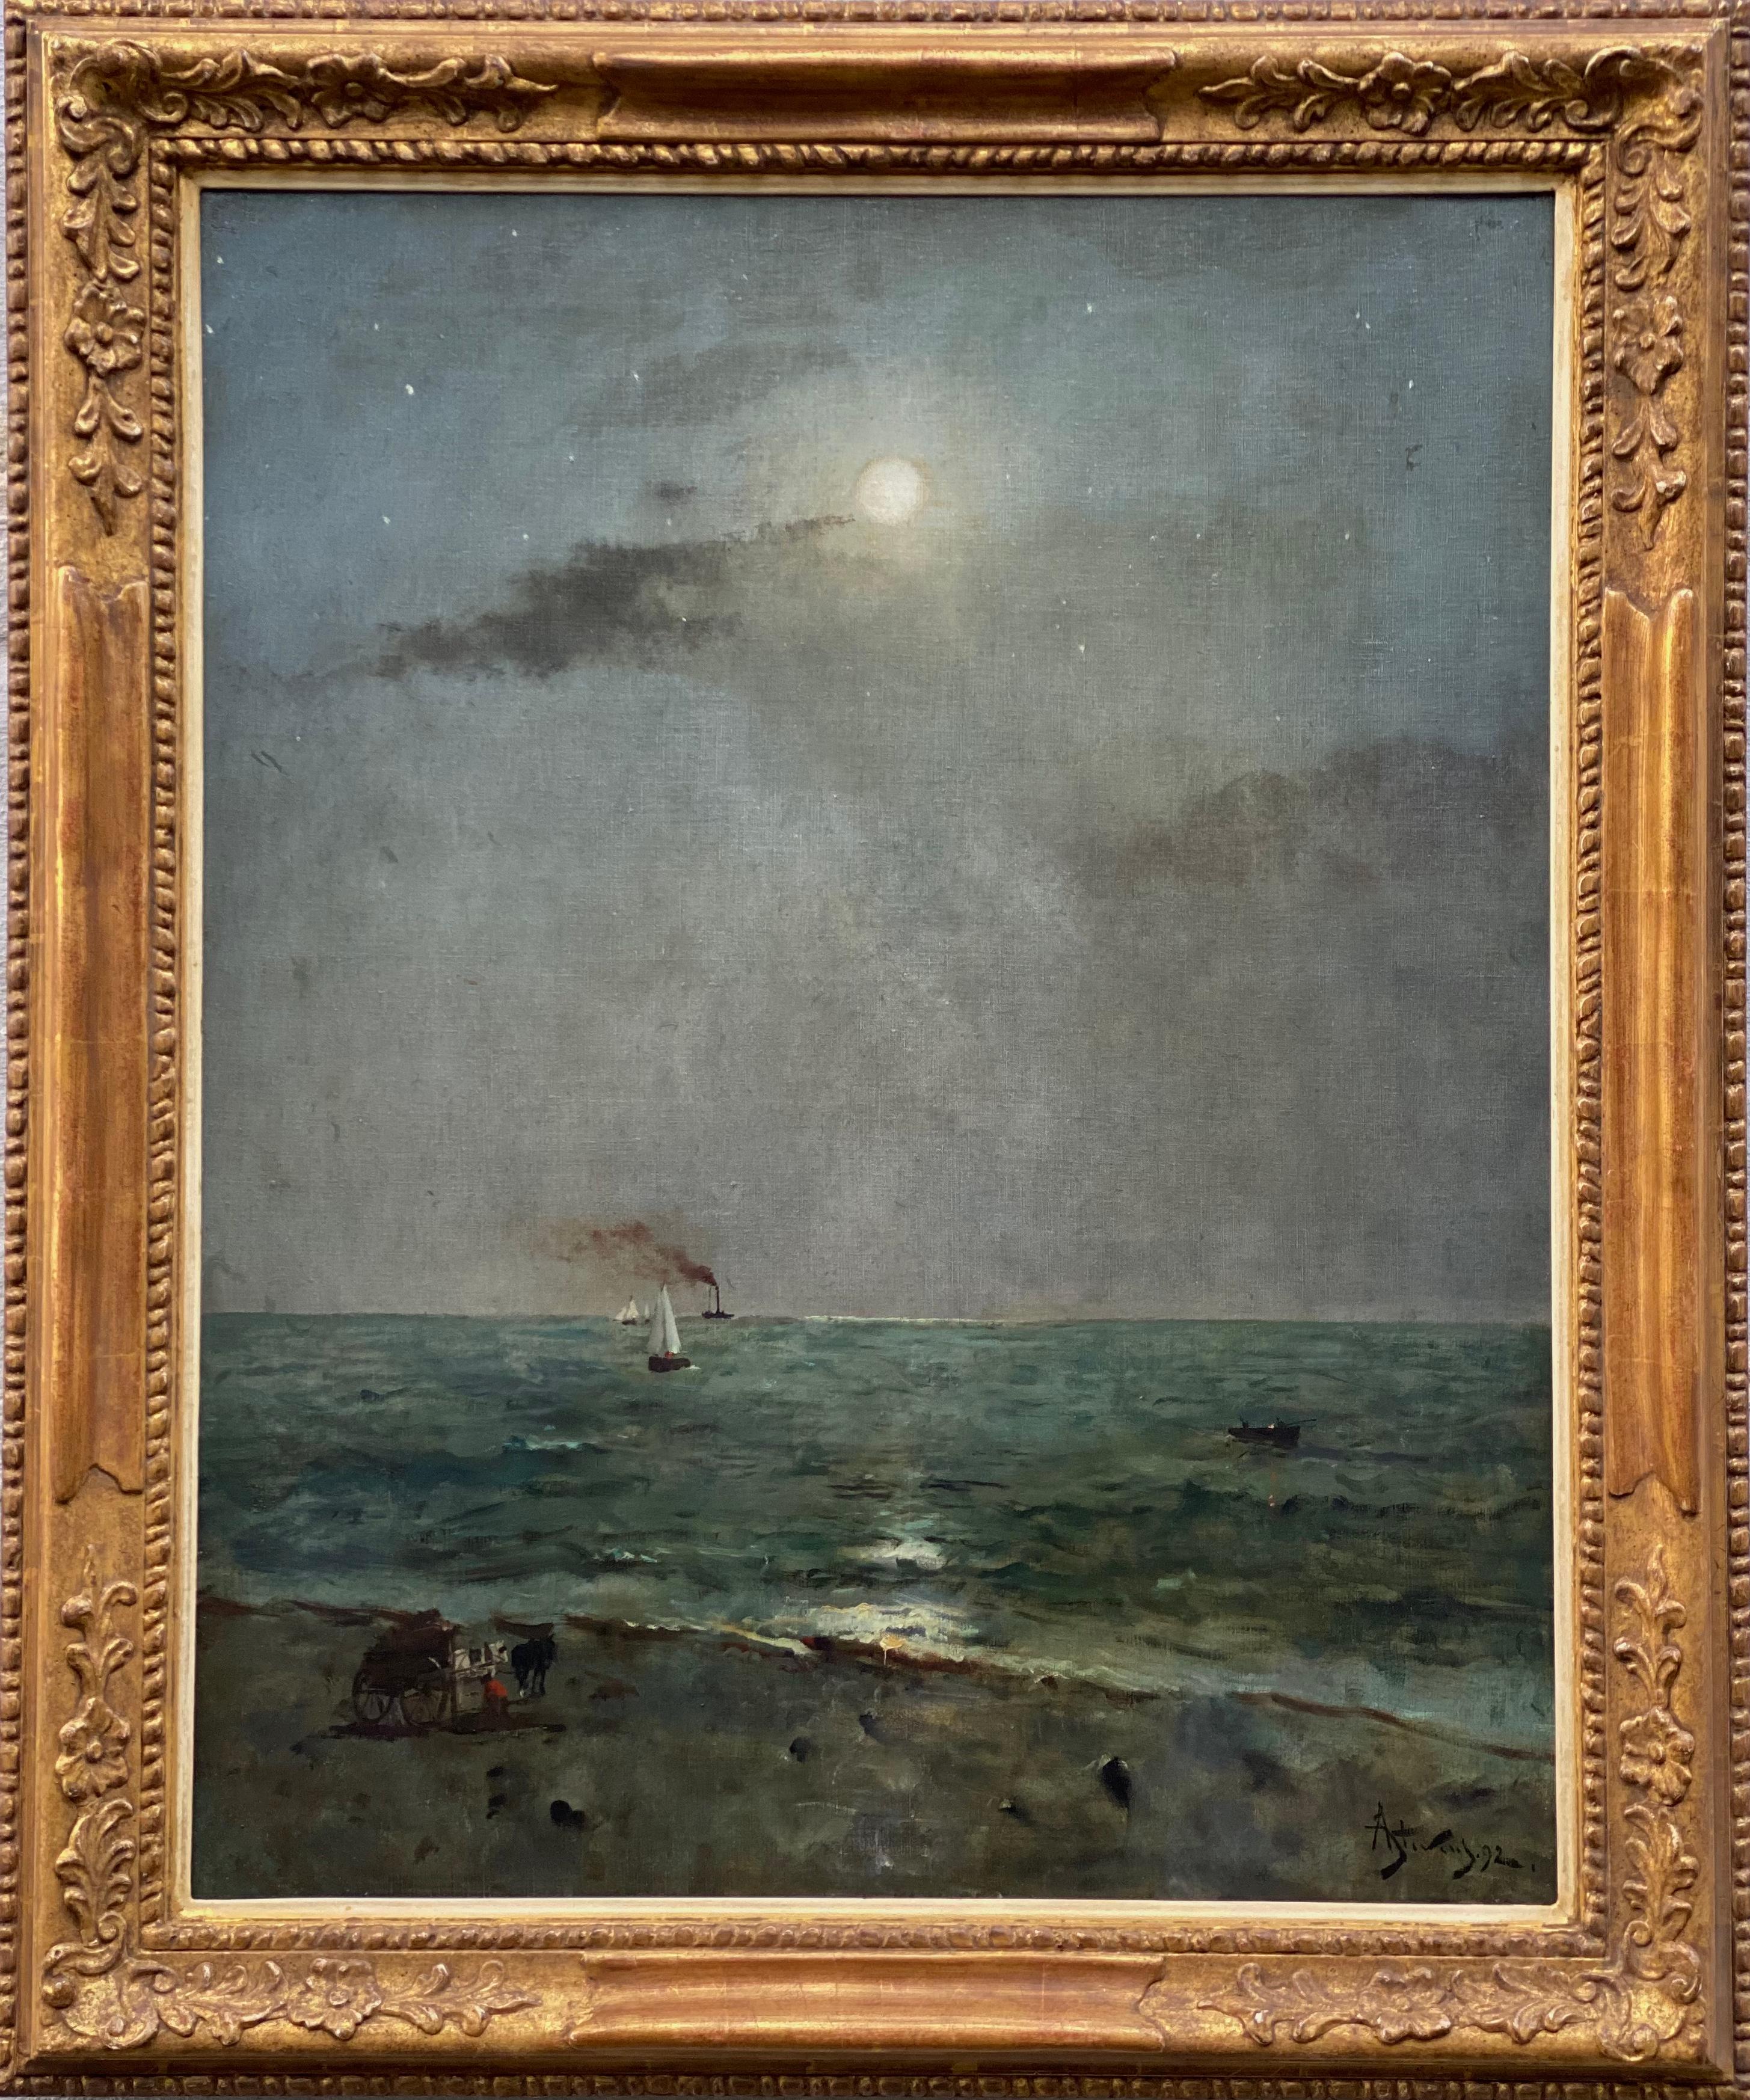 Stevens Alfred
Bruxelles 1823 - 1906 Paris
Peintre belge

Clair de Lune sur la Mer
Signature : Signée en bas à droite et datée 92
Médium : Huile sur toile
Dimensions : Taille de l'image 81 x 65 cm, taille du cadre 97,50 x 81,50 cm

Provenance : 
-